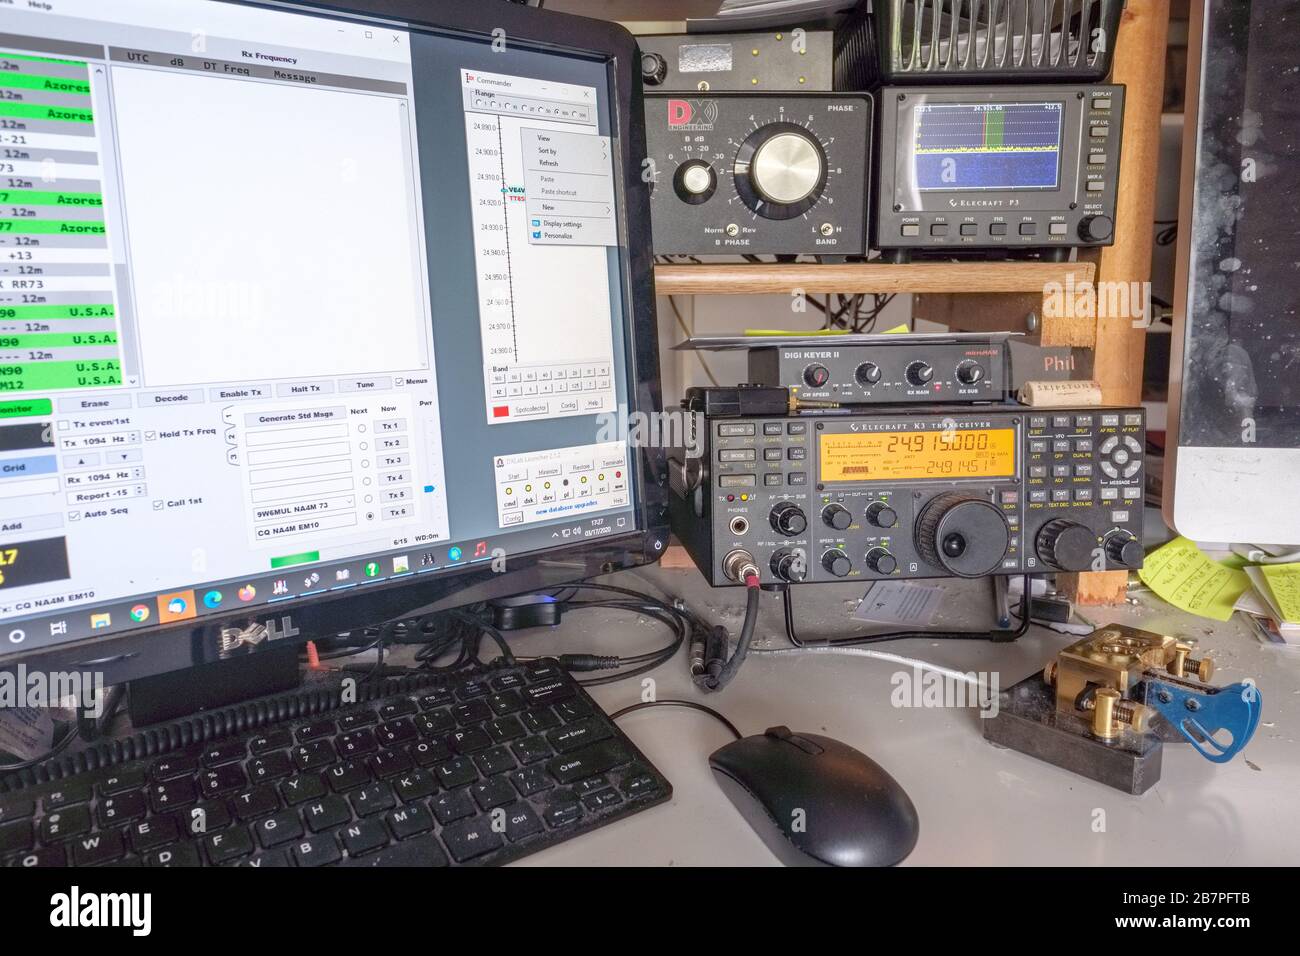 Una moderna estación de radio de jamón amateur en casa. El equipo incluye un transceptor de radio de estado sólido y un ordenador de sobremesa conectado para trabajar con la radio. Foto de stock